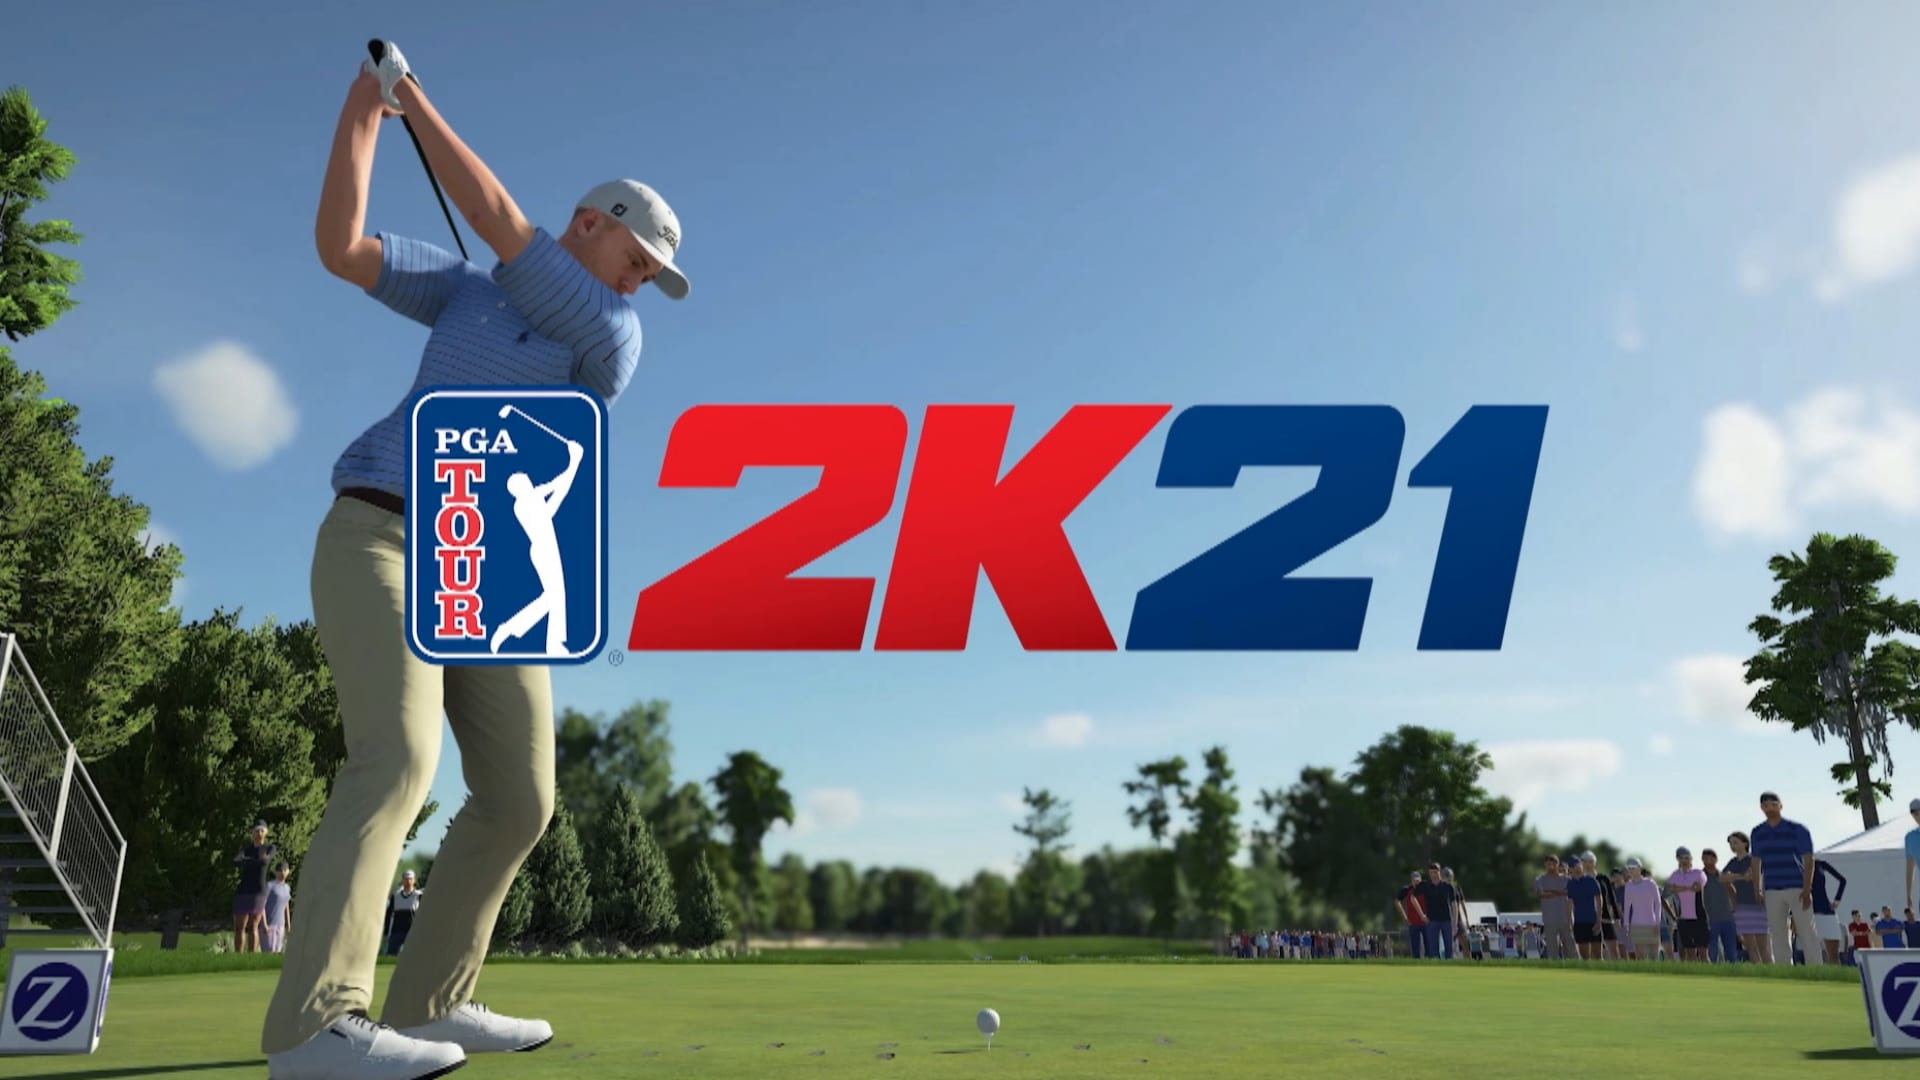 Illustration de l'article sur 2K - PGA TOUR 2K21 seradisponible le 21 aot prochain